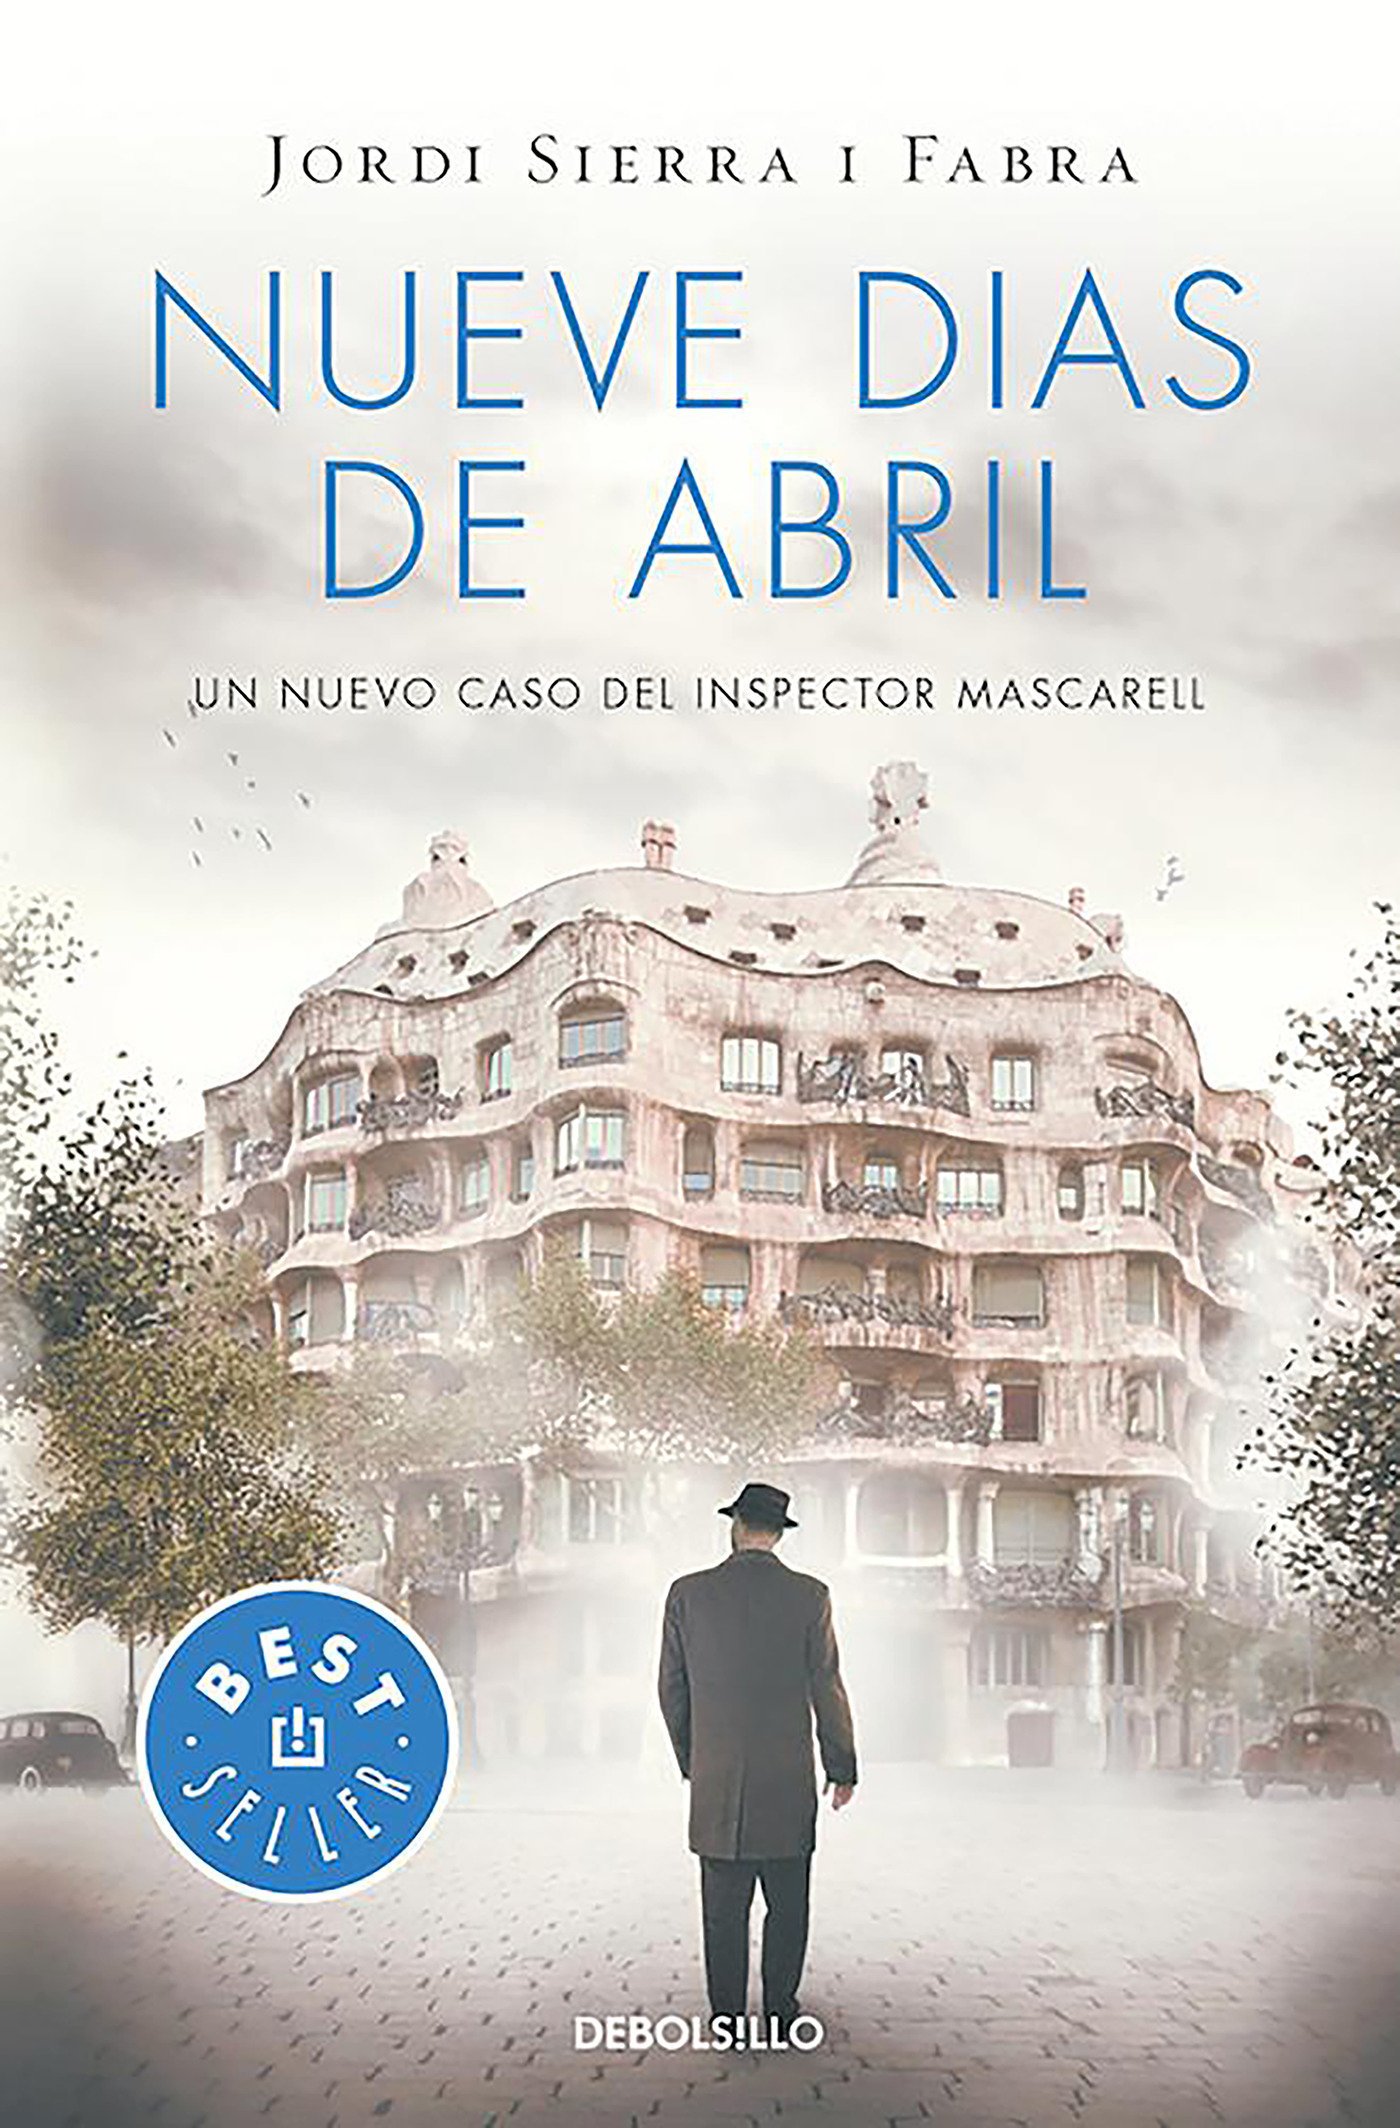 “Nueve días de abril” de Jordi Sierra i Fabra